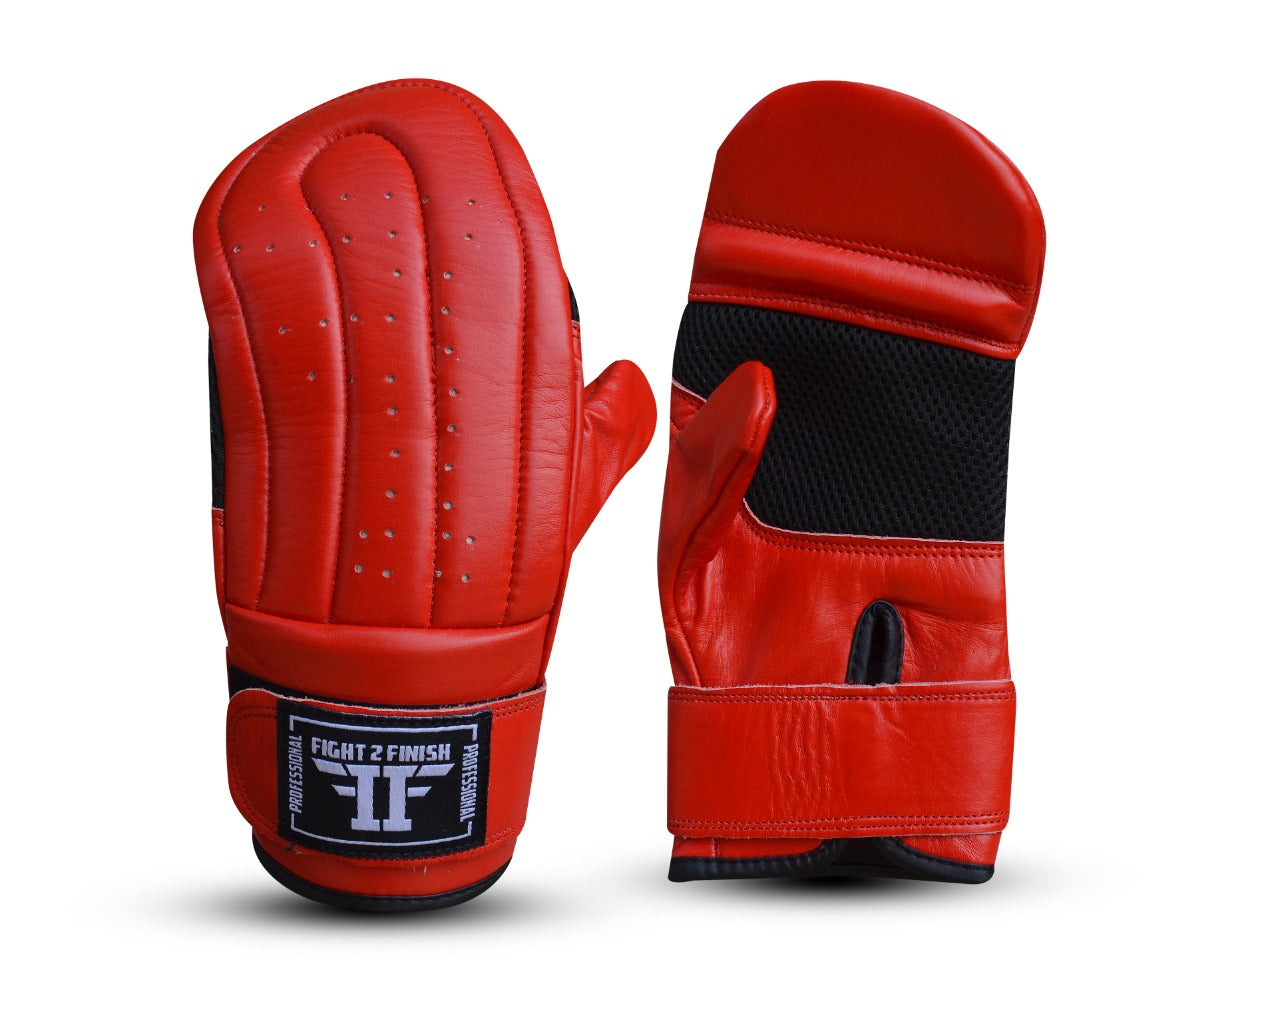 Buy Everlast Protex 2 Heavy Bag Training Gloves Online India| Everlast  Boxing Gloves